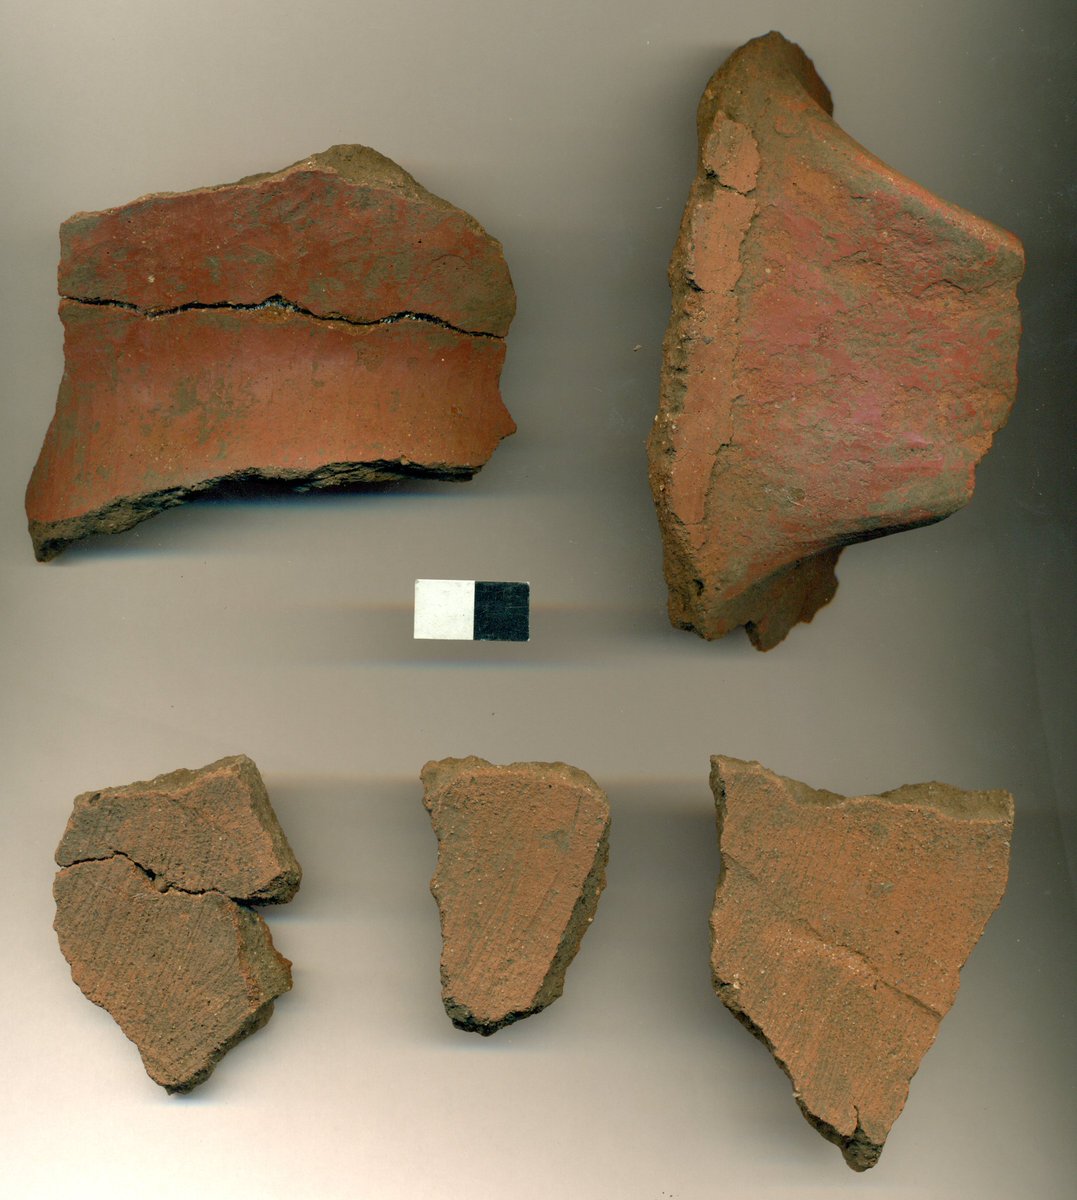 Algunas de las cerámicas encontradas en "Mapocho Incaico".